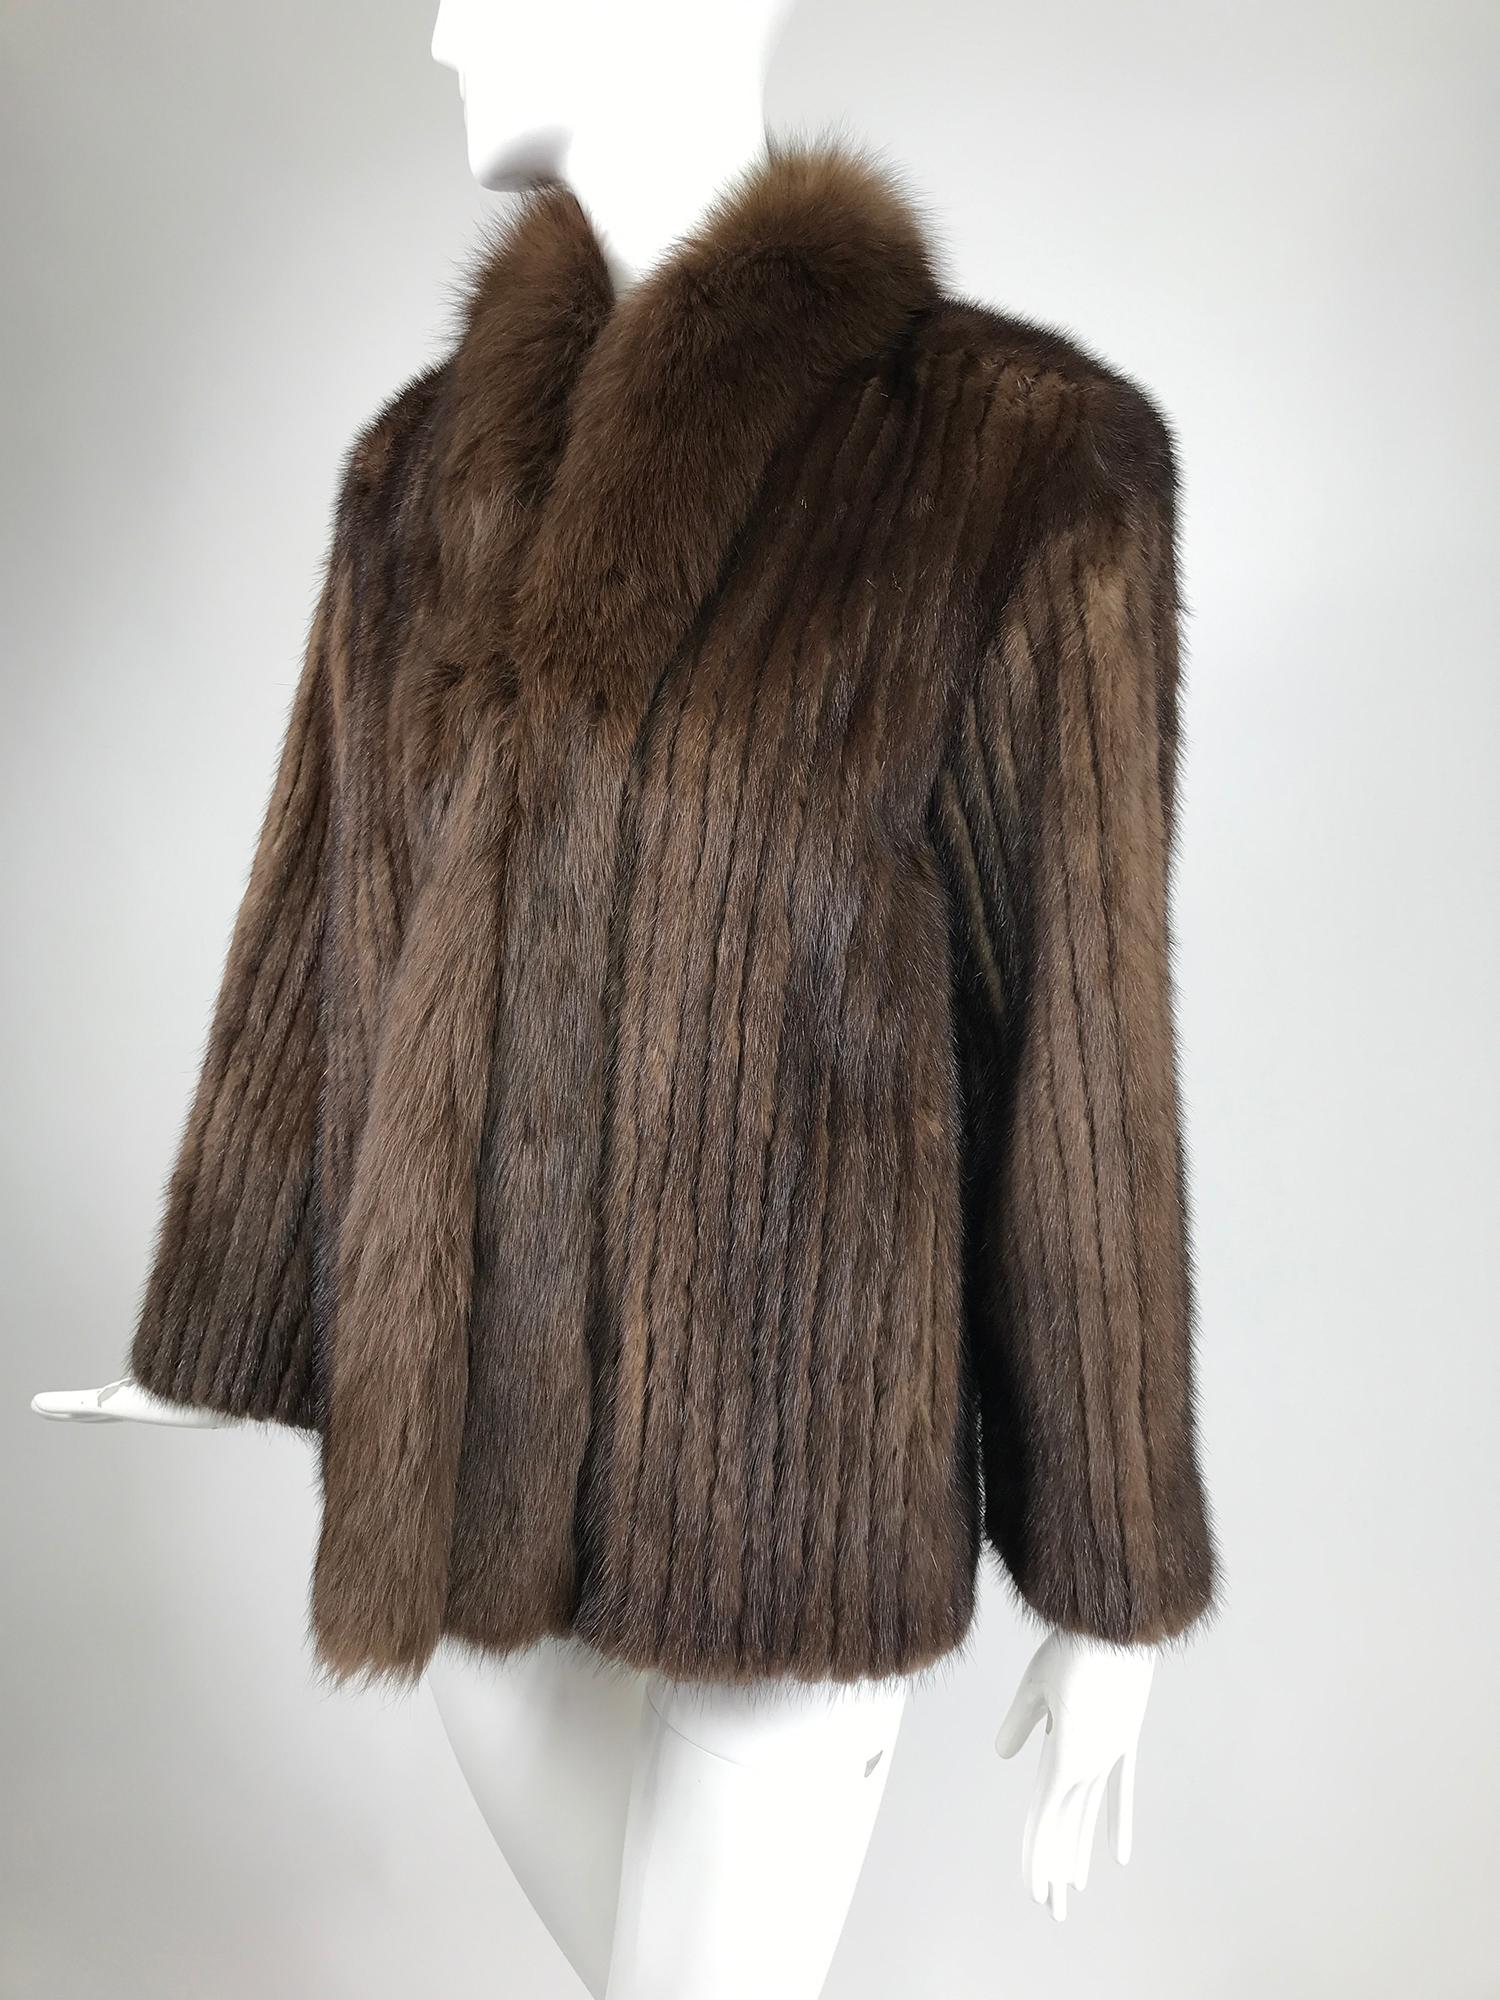 SAGA Jacke aus kastanienbraunem Nerz mit Fuchspelzkragen und Frontbesatz. Hergestellt in Dänemark. Diese schöne Jacke ist hüftlang und hat aufgesetzte Vordertaschen. Das Fell ist in schmalen, vertikalen Streifen gearbeitet, die an einen breiten,